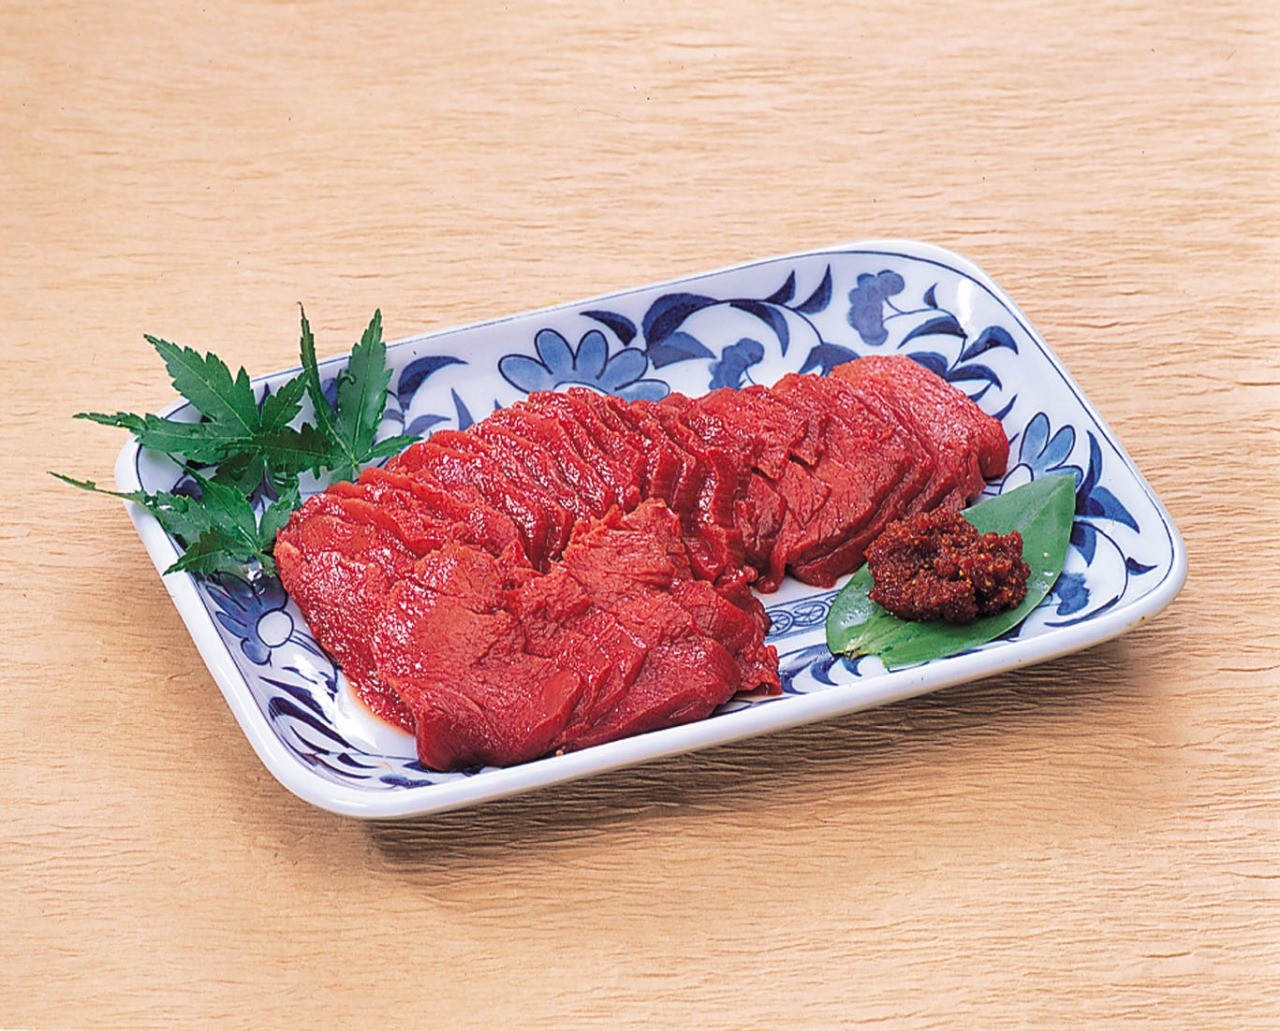 Aizu horse meat